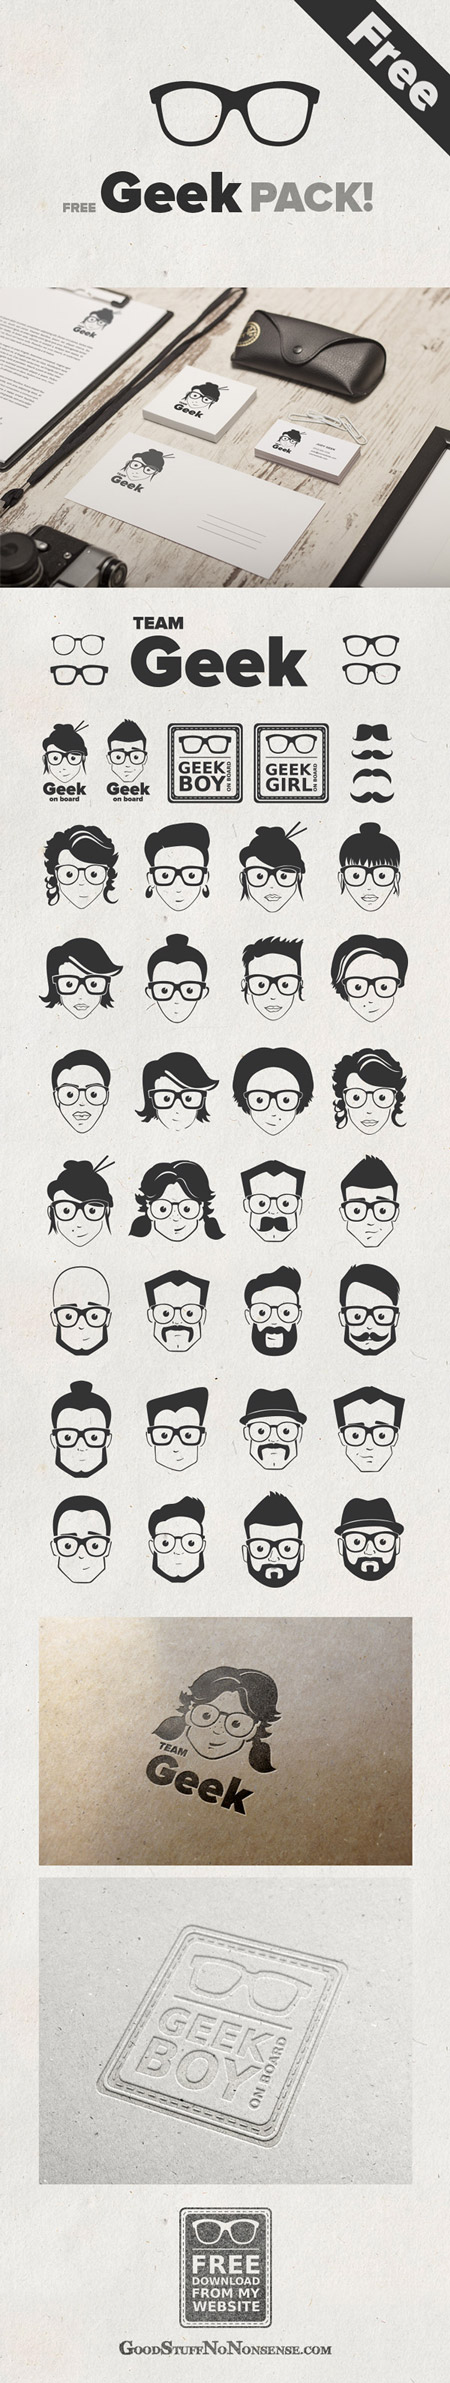 Web-дизайн - Аватары в очках